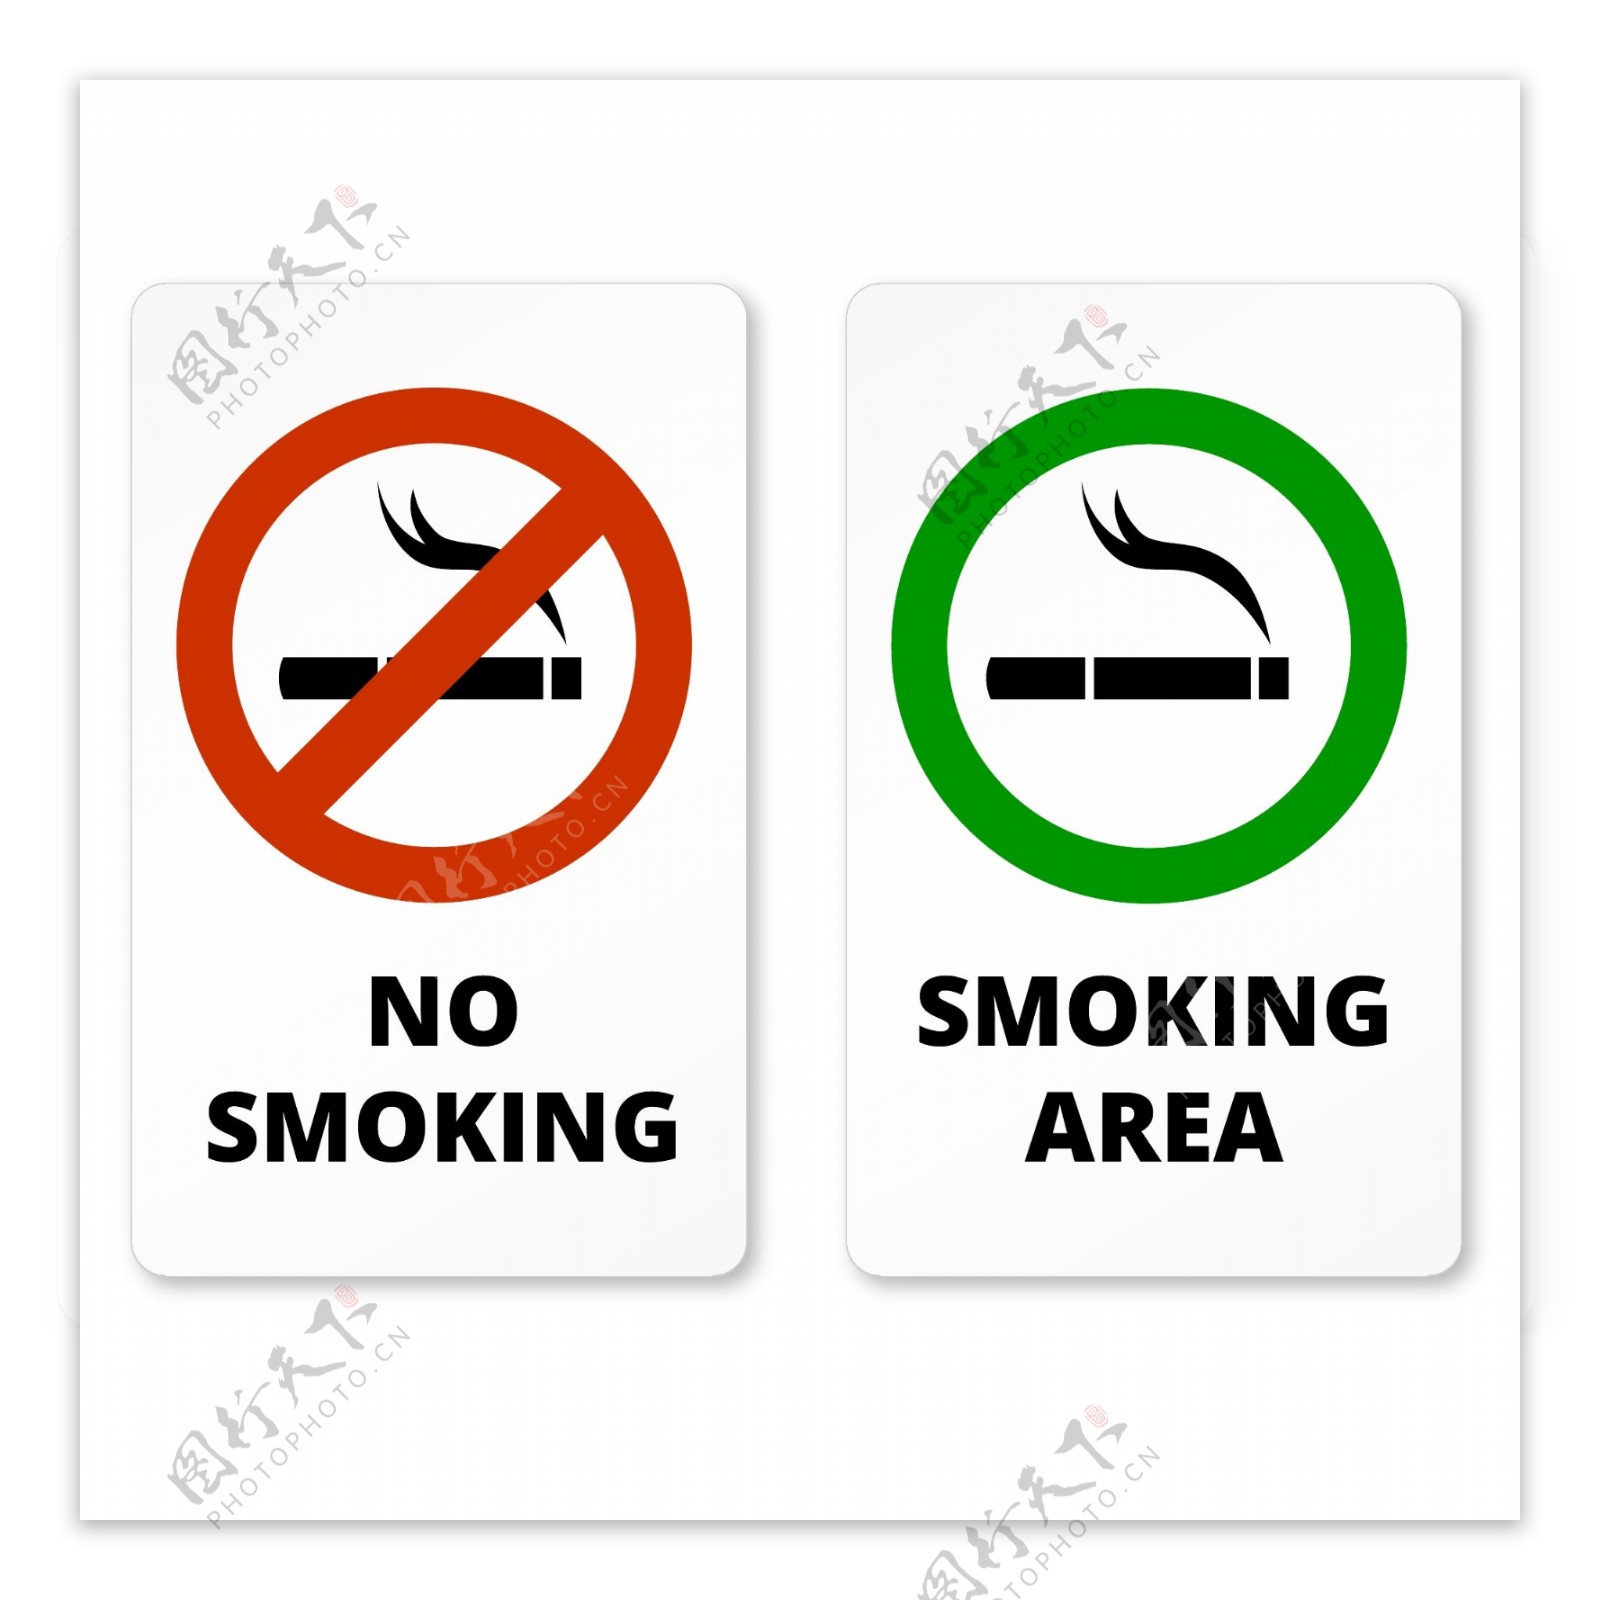 吸烟标志